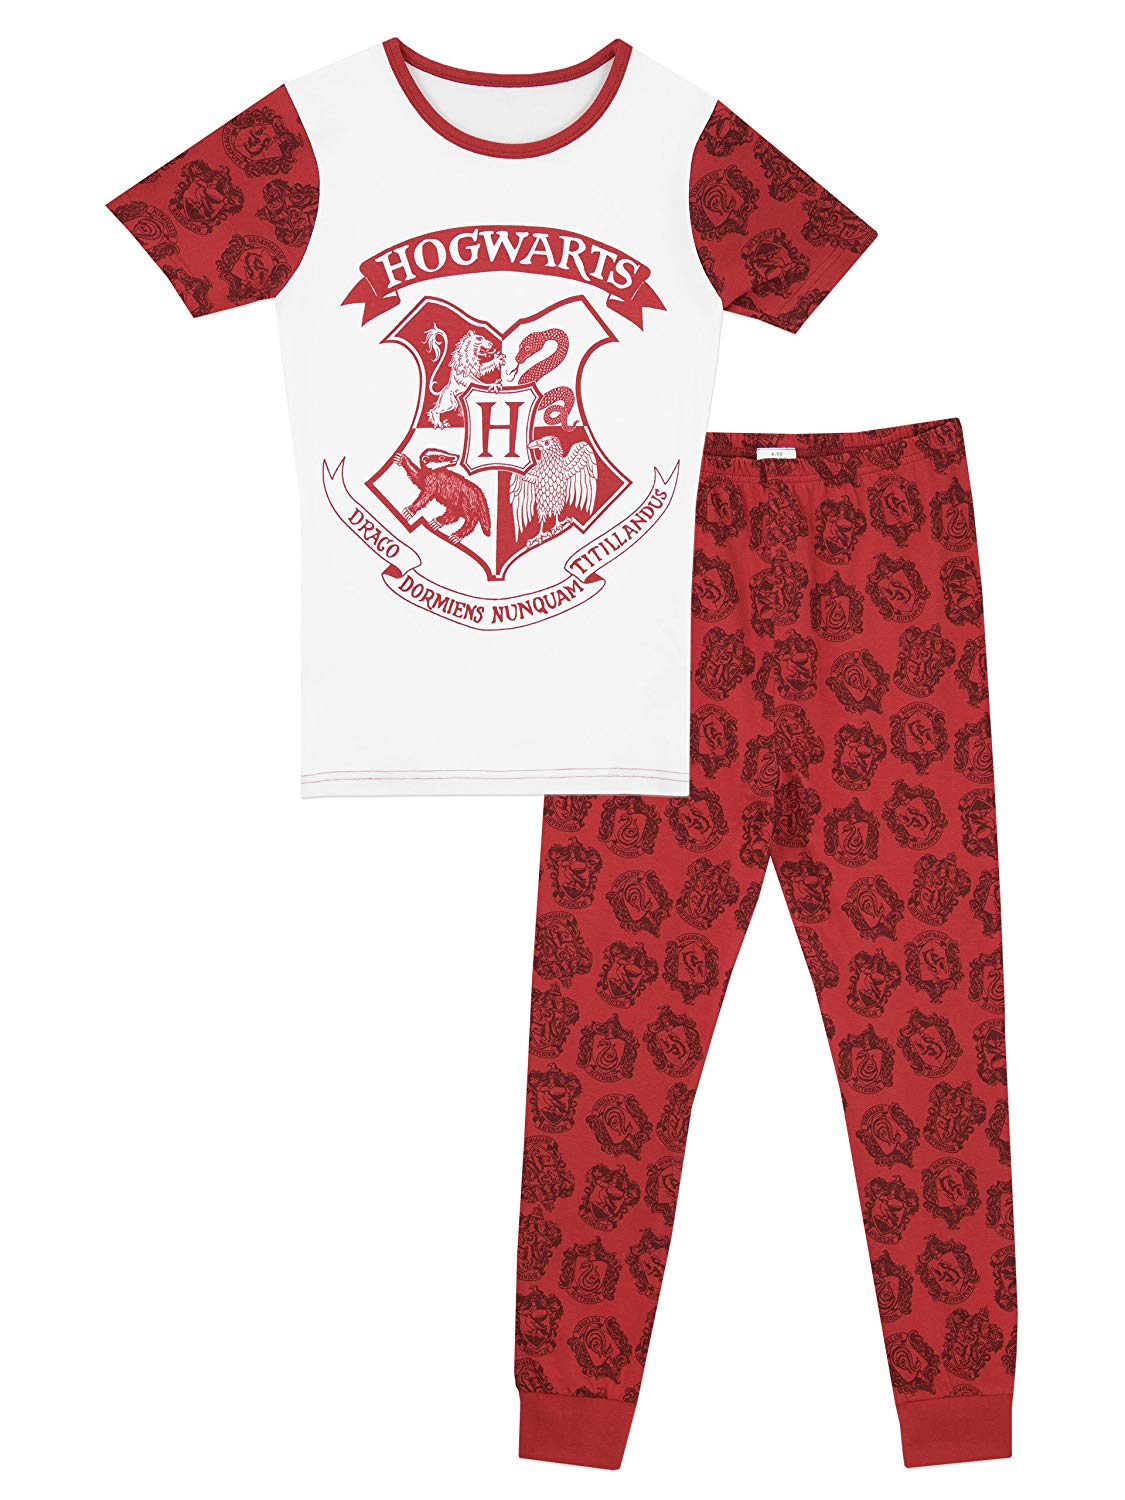 Amazon.com: Harry Potter Girls Hogwarts Pajamas: Clothing